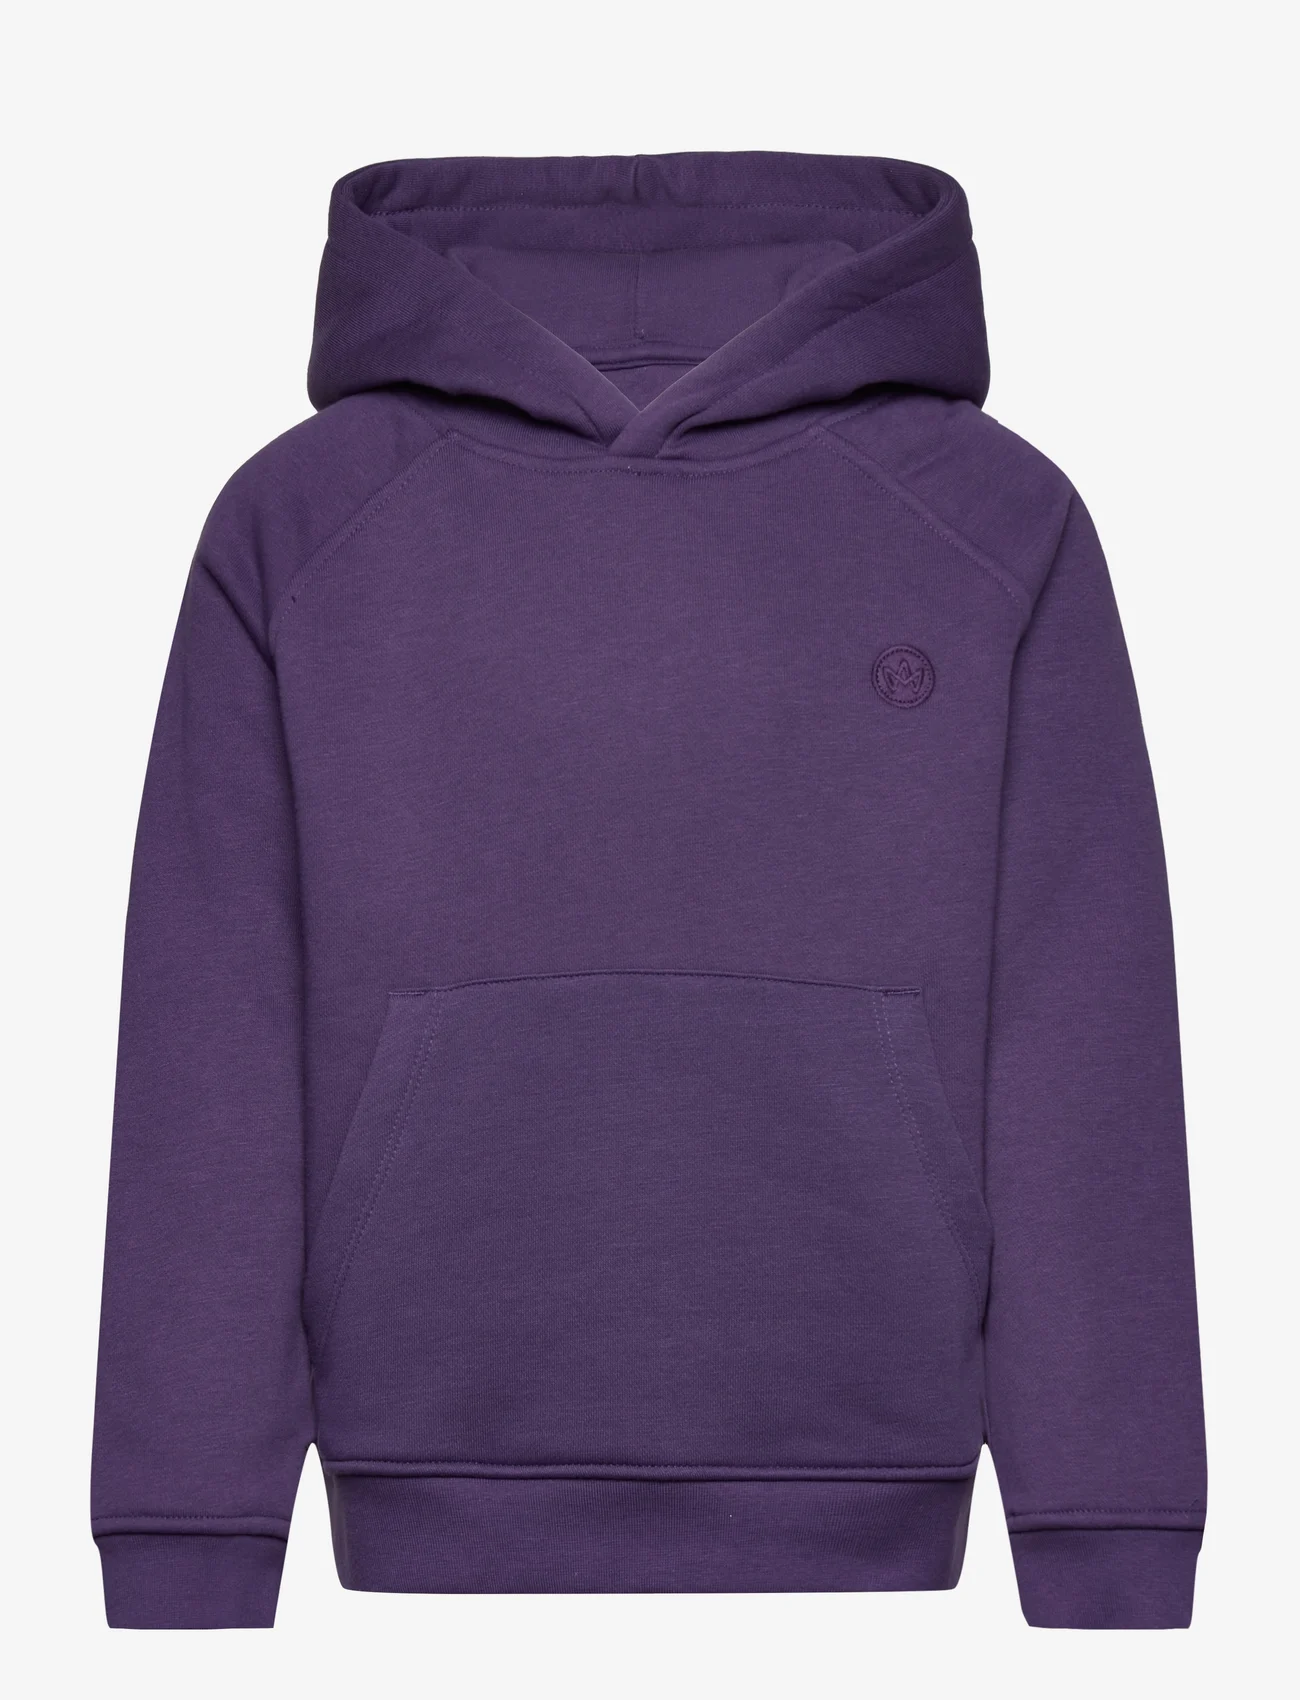 Kronstadt - Lars Kids Organic/Recycled hoodie - sweatshirts & hoodies - plum - 0